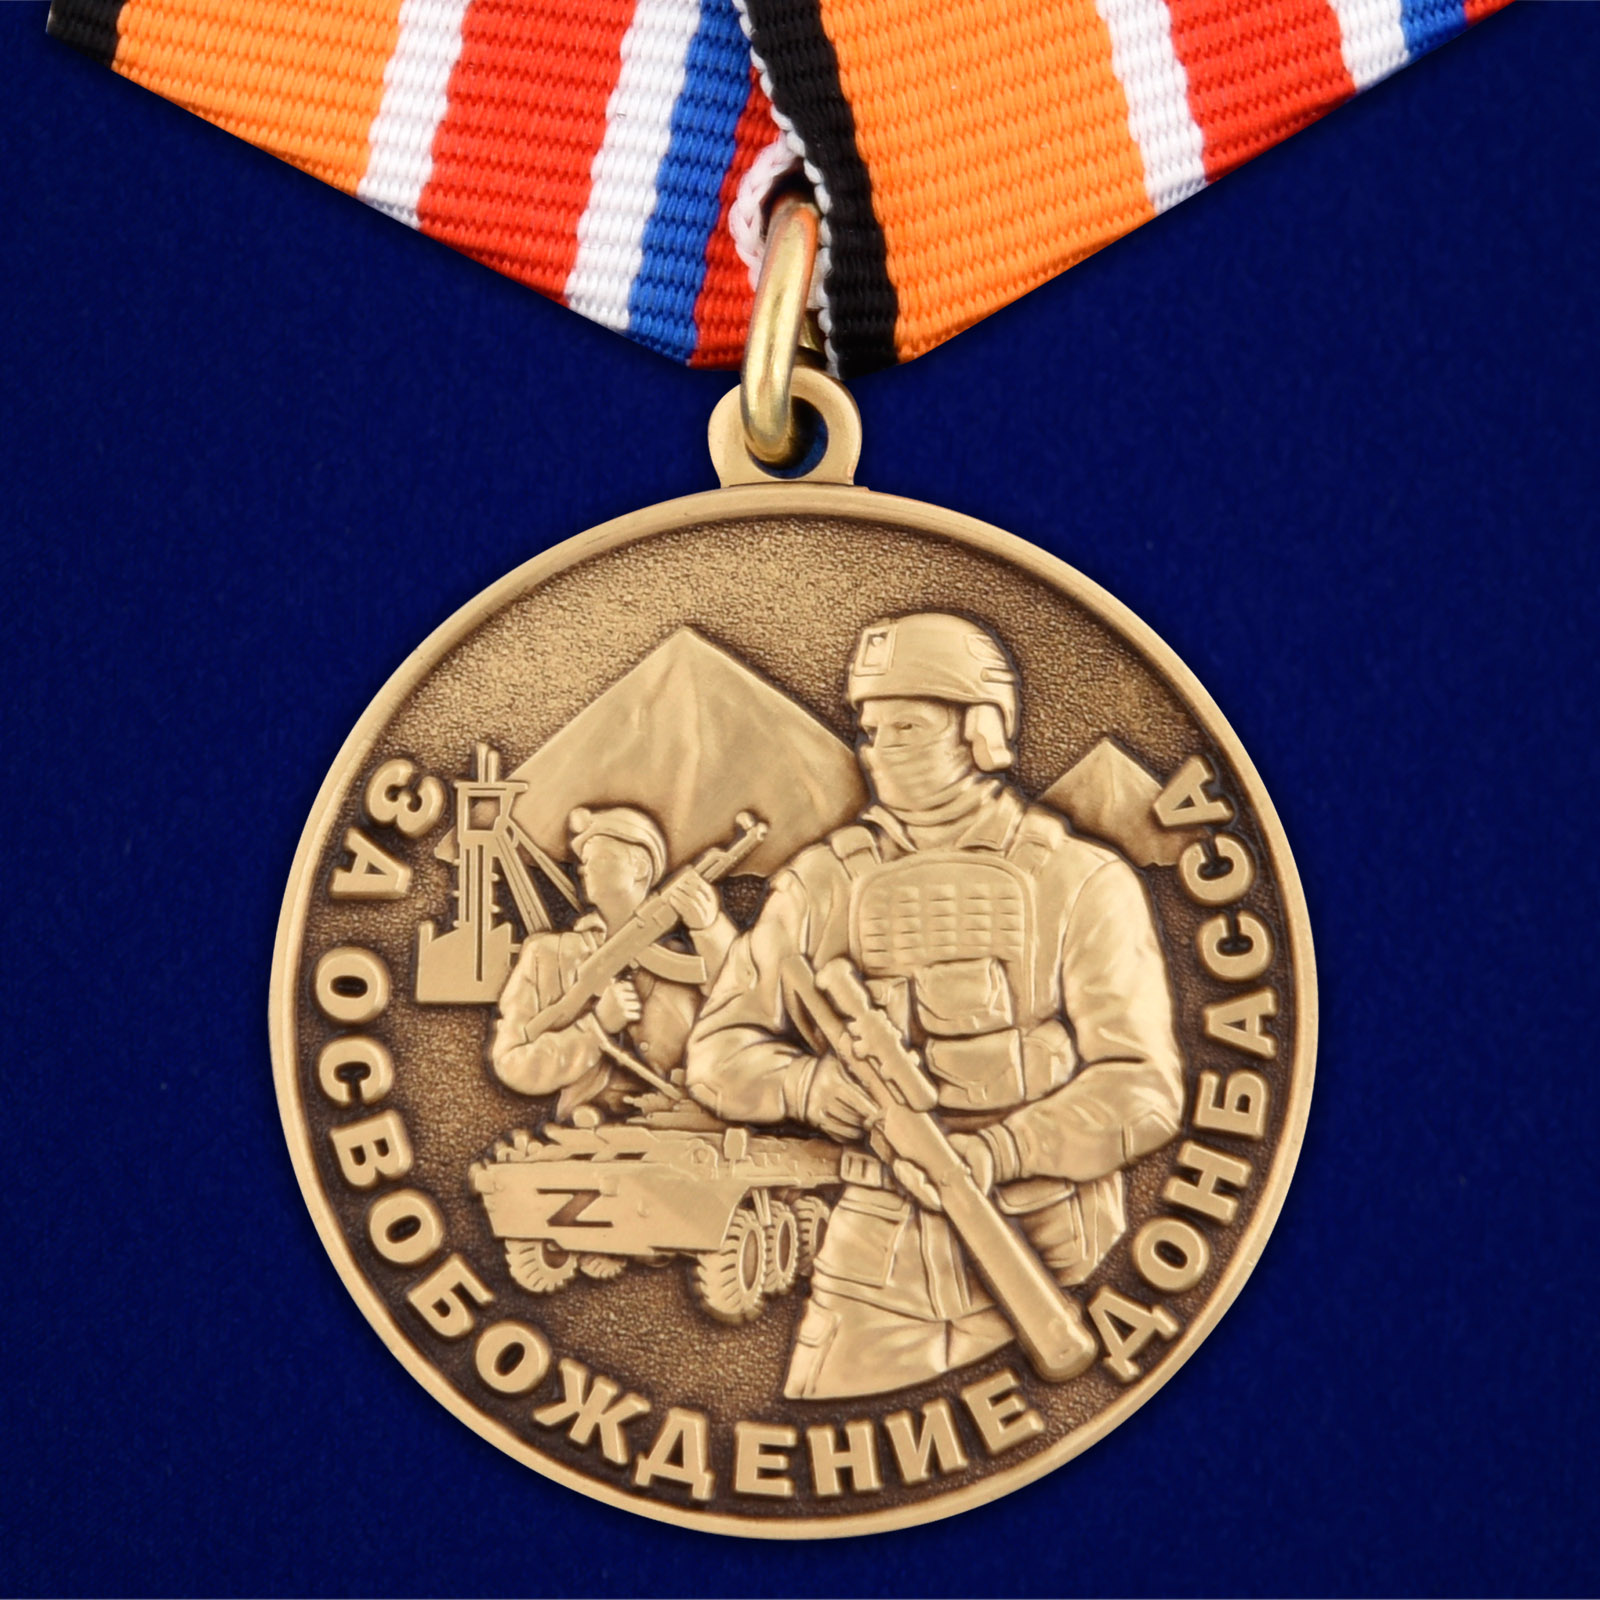 Купить медаль Z За освобождение Донбасса с доставкой в ваш город